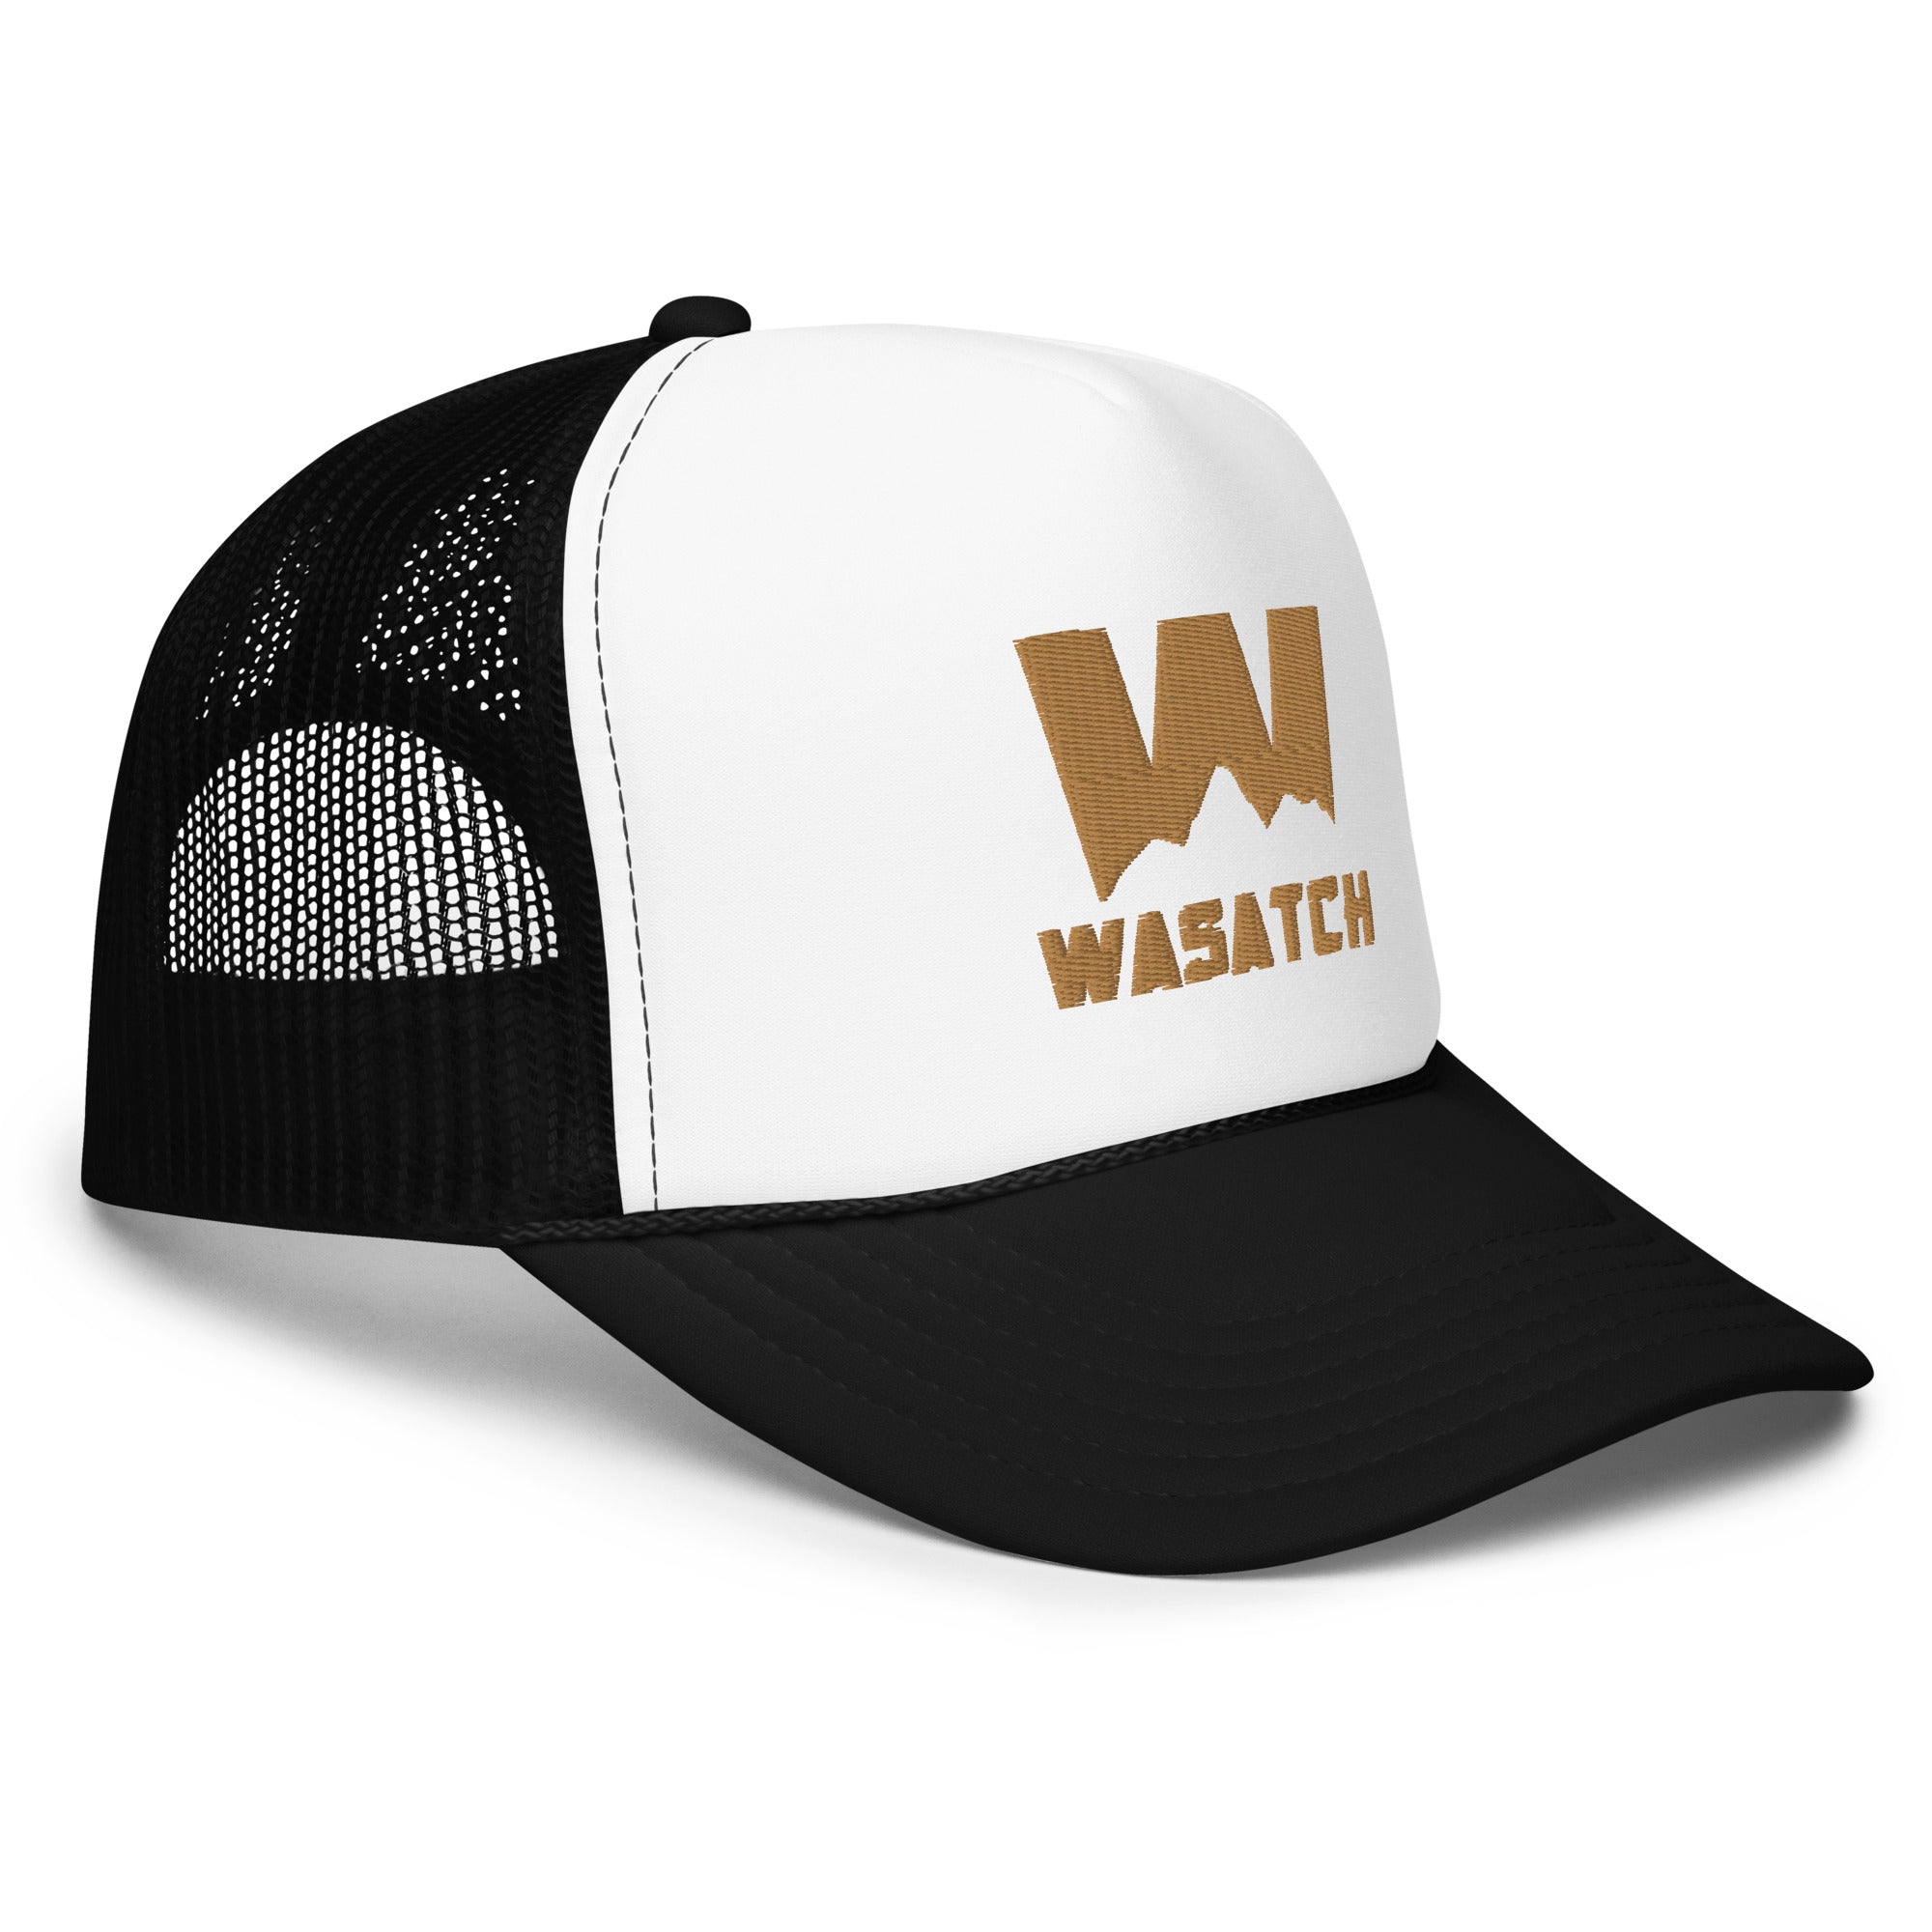 Wasatch Foam trucker hat